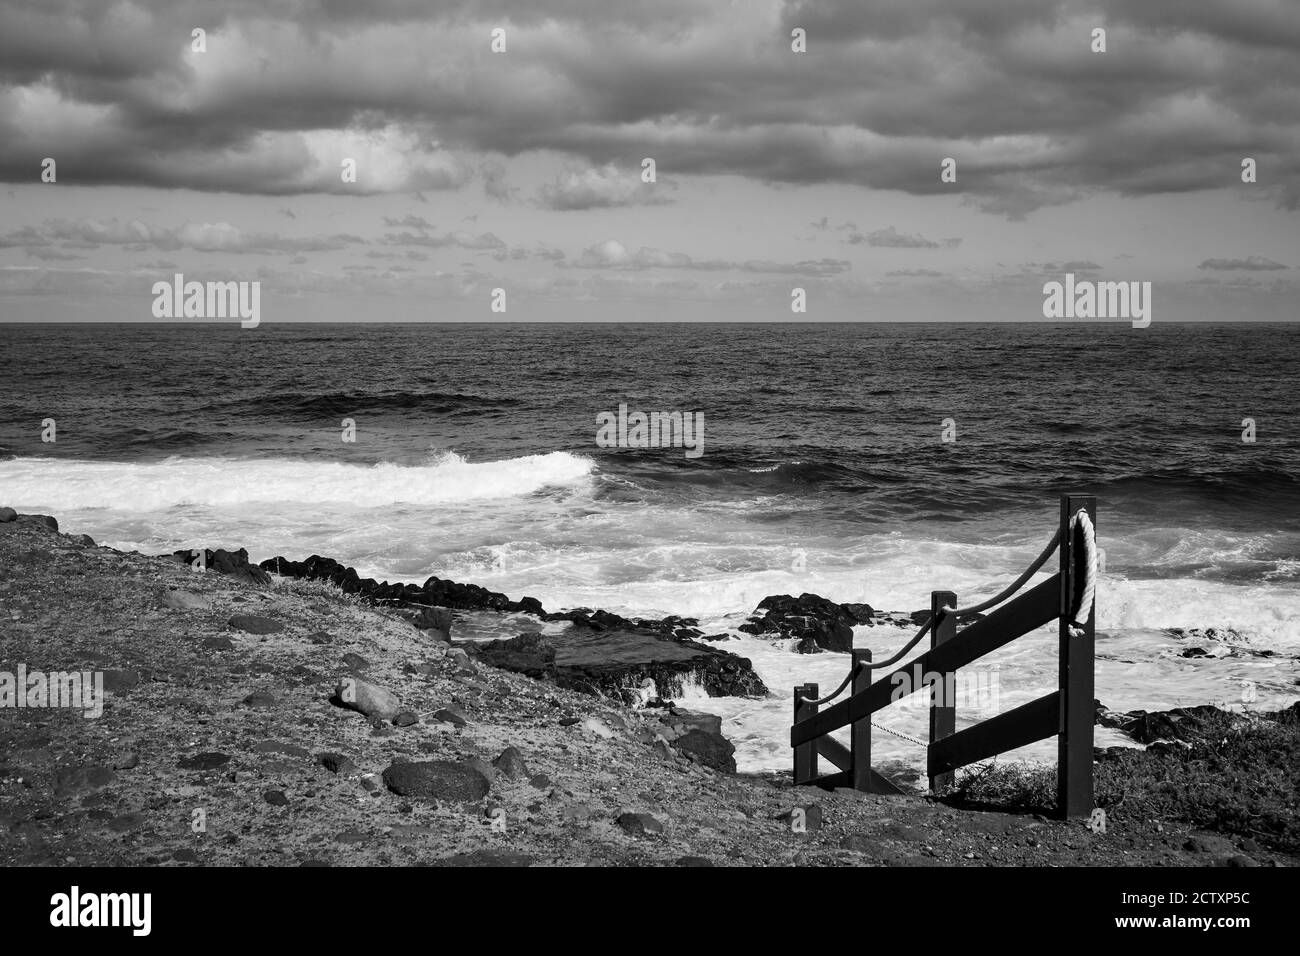 L'océan Atlantique et le sentier de la plage de Tenerife, îles Canaries, Espagne. Paysage canarien. Photographie en noir et blanc Banque D'Images